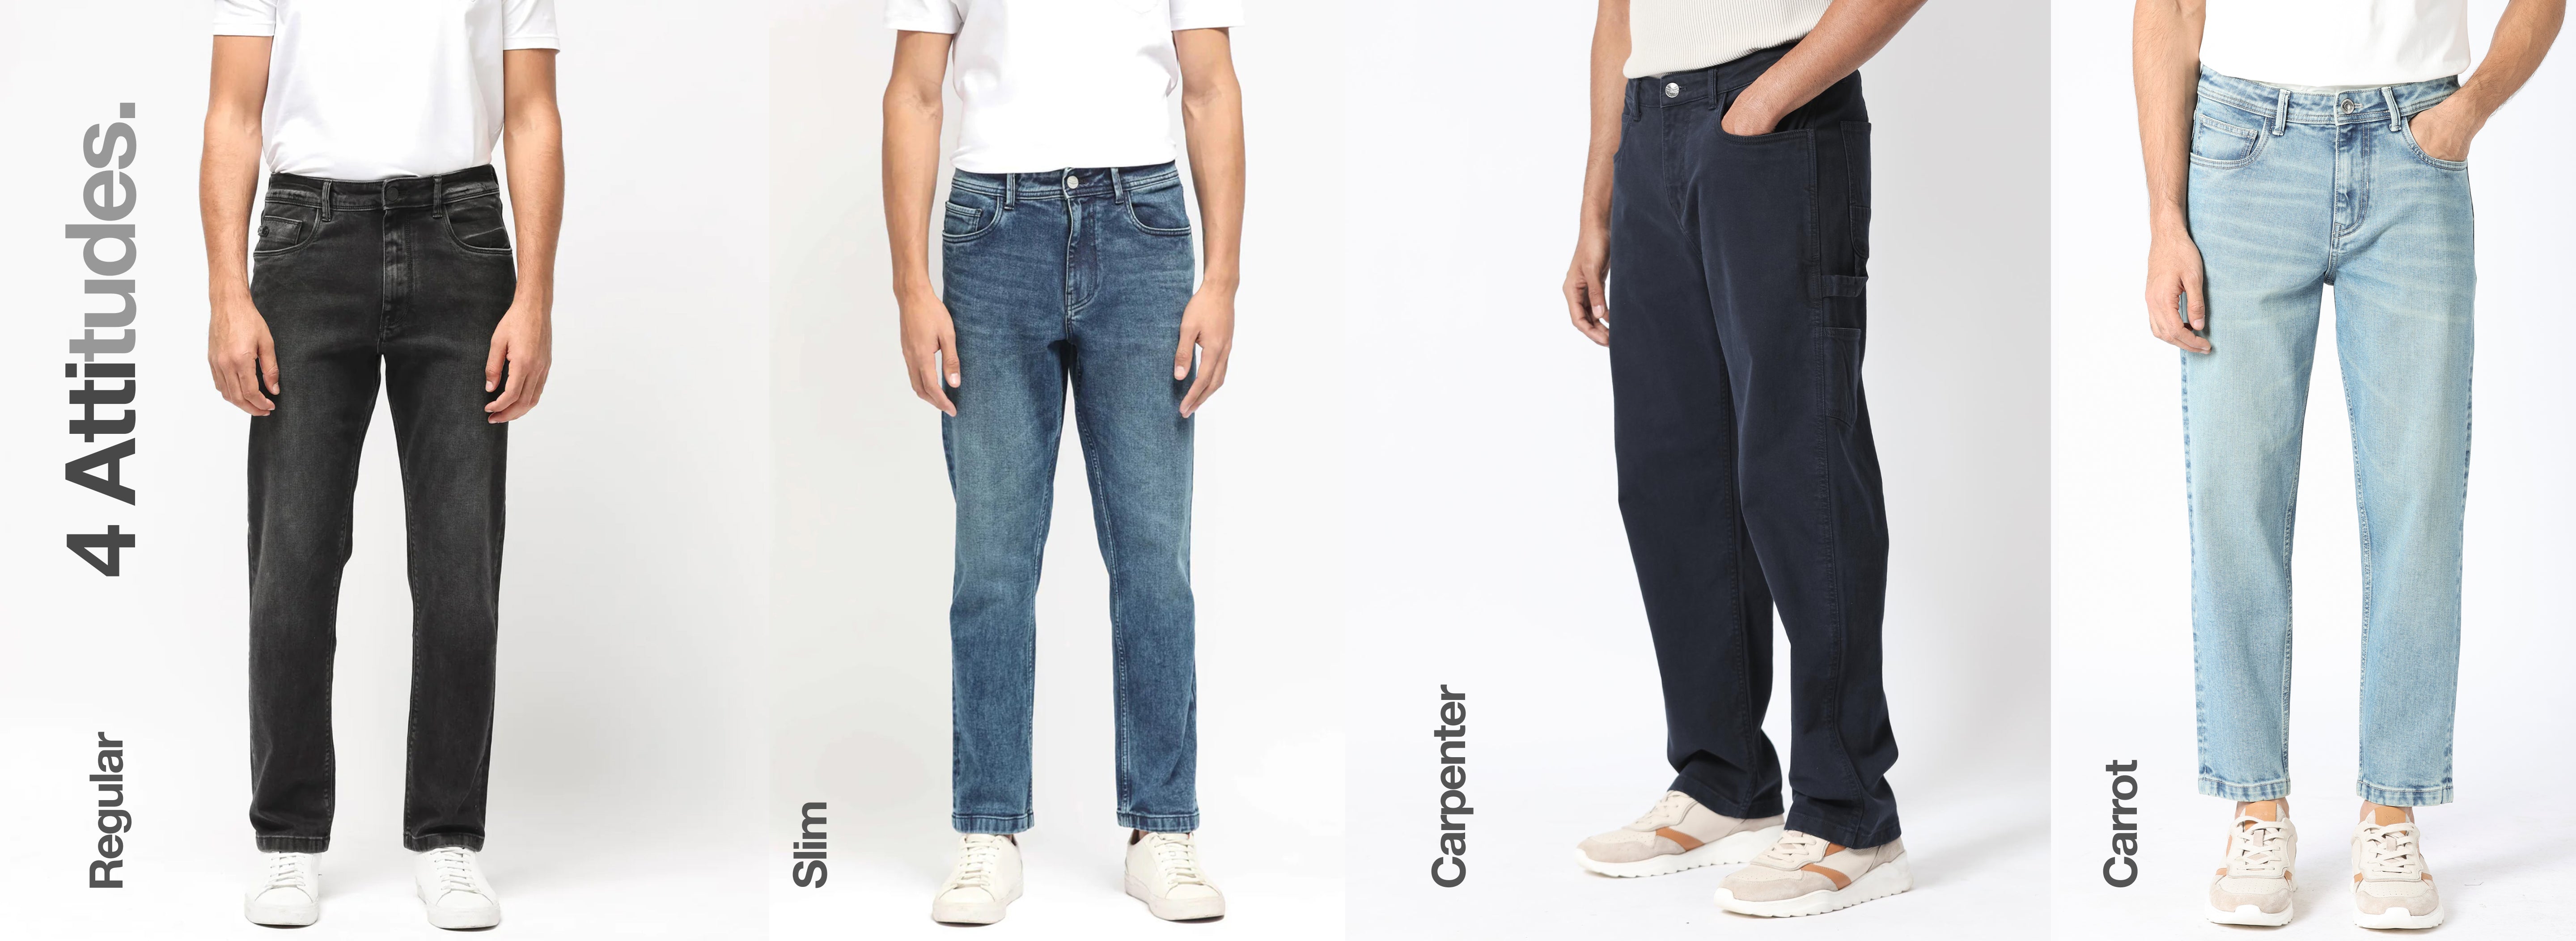 Buy Denim Jeans for Men  Plain Jeans, Stretch Jeans & Color Jeans